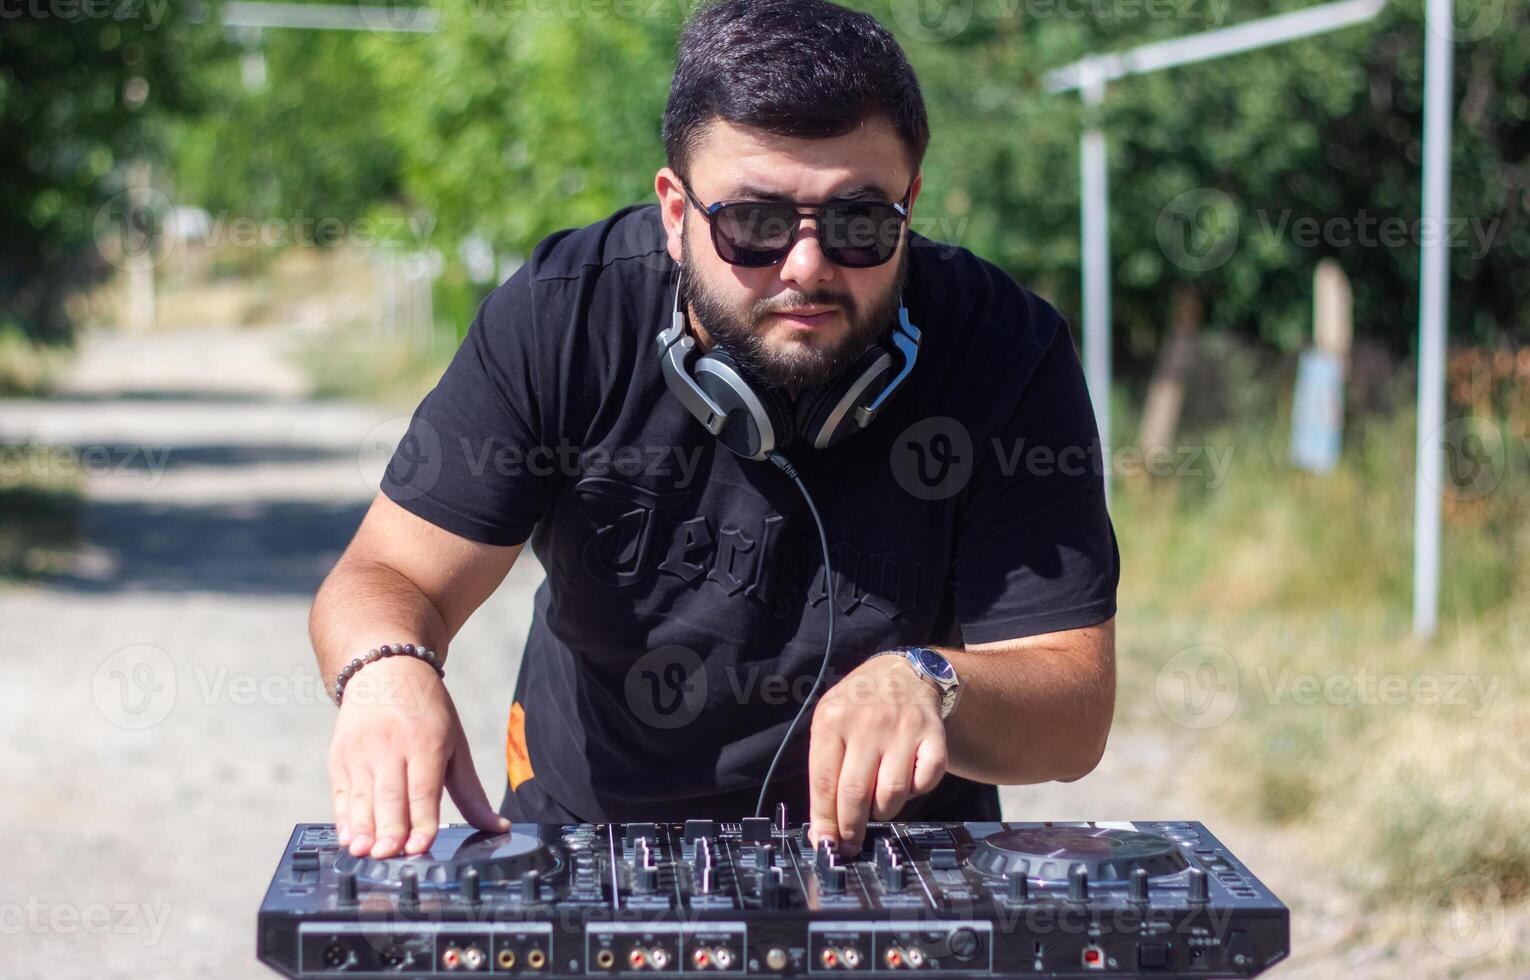 DJ con auriculares y mezclador en el parque, el DJ a trabajo foto